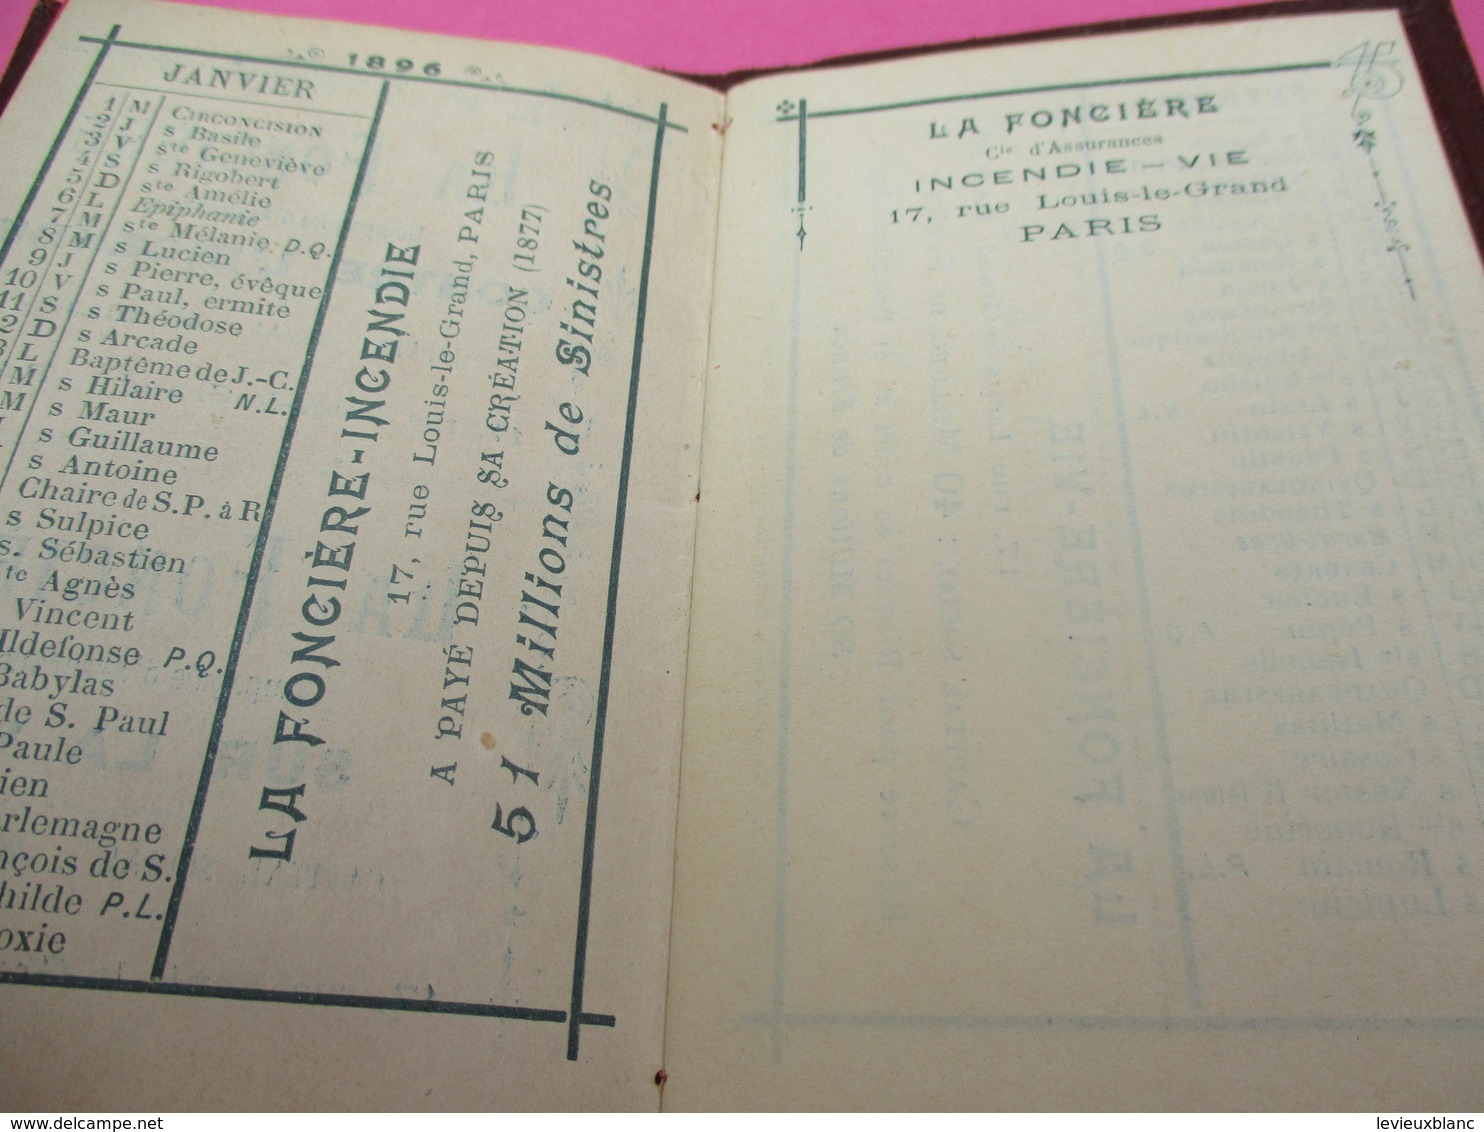 Assurances/ Petit Calendrier Ancien/La Fonciére/ Contre L'Incendie/ Sur La Vie/ 1896          CAL409 - Kleinformat : ...-1900